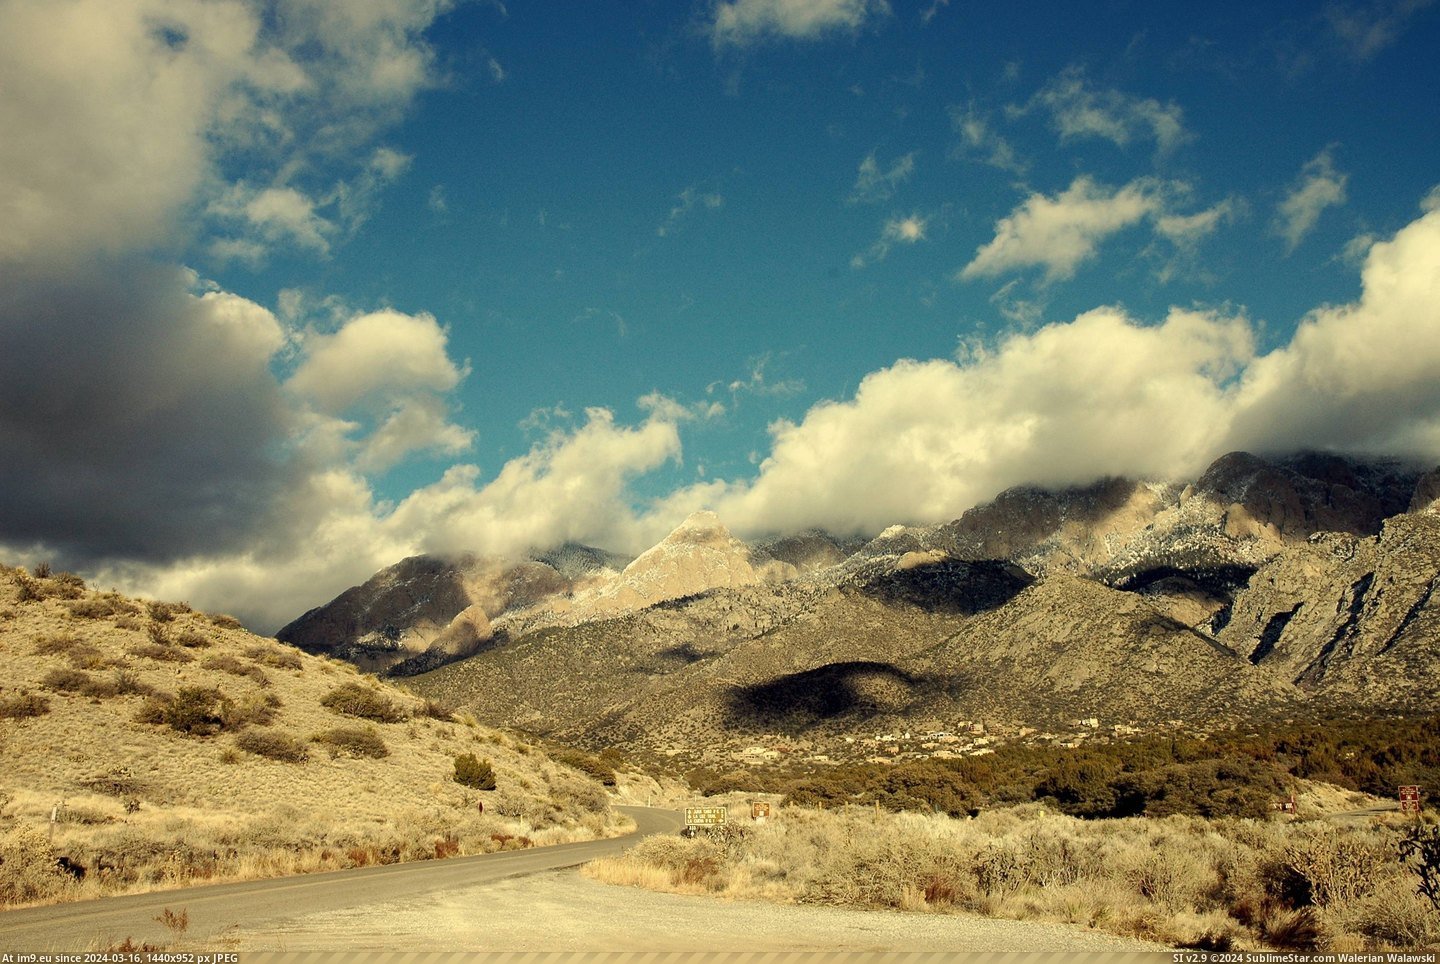 #New #Mountains #Albuquerque #Sandia #Mexico #3008x2000 [Earthporn] Sandia Mountains, Albuquerque, New Mexico [3008x2000] Pic. (Изображение из альбом My r/EARTHPORN favs))